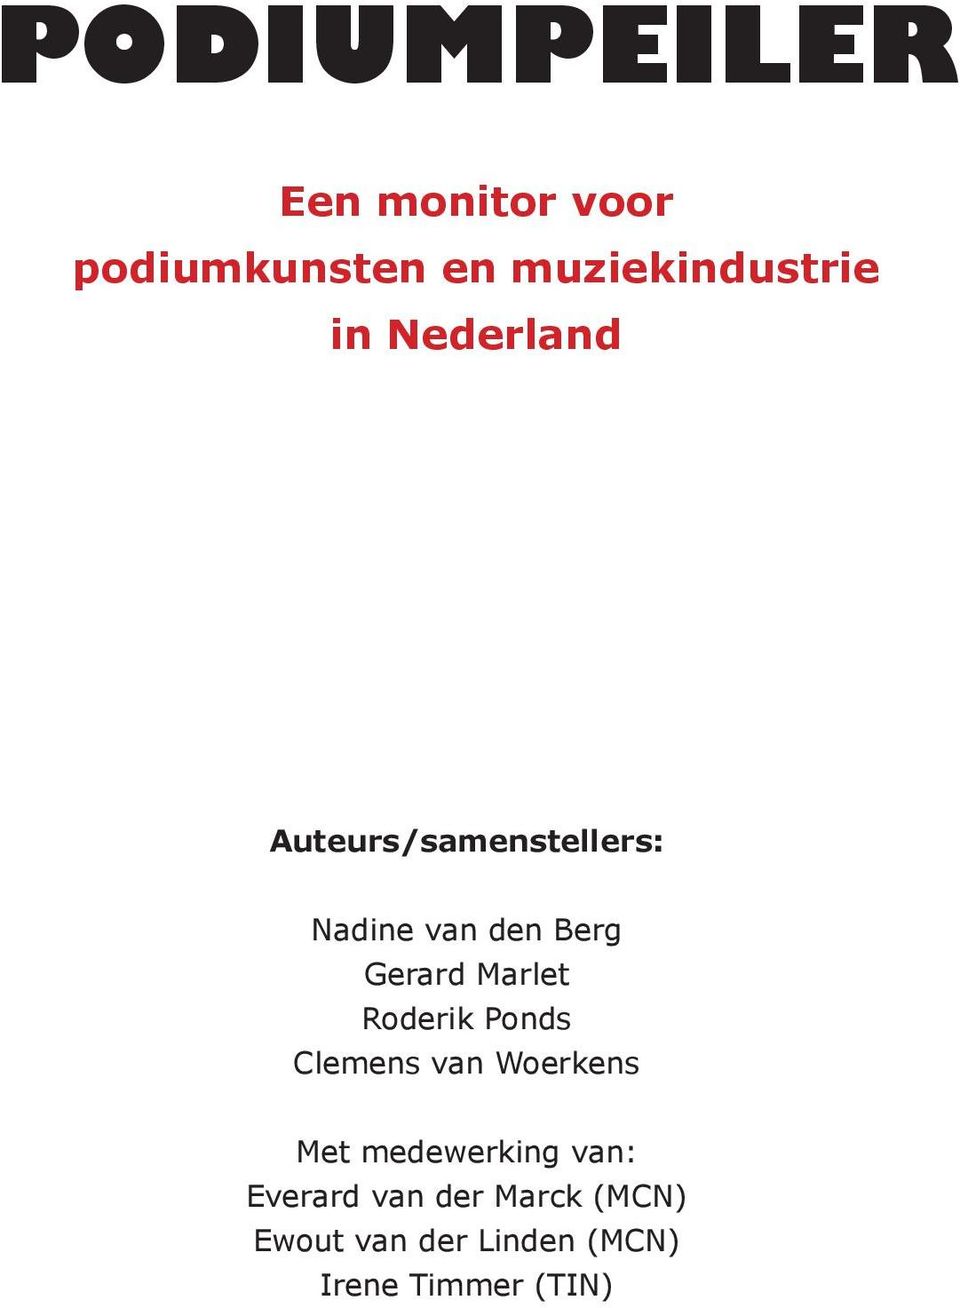 Marlet Roderik Ponds Clemens van Woerkens Met medewerking van: